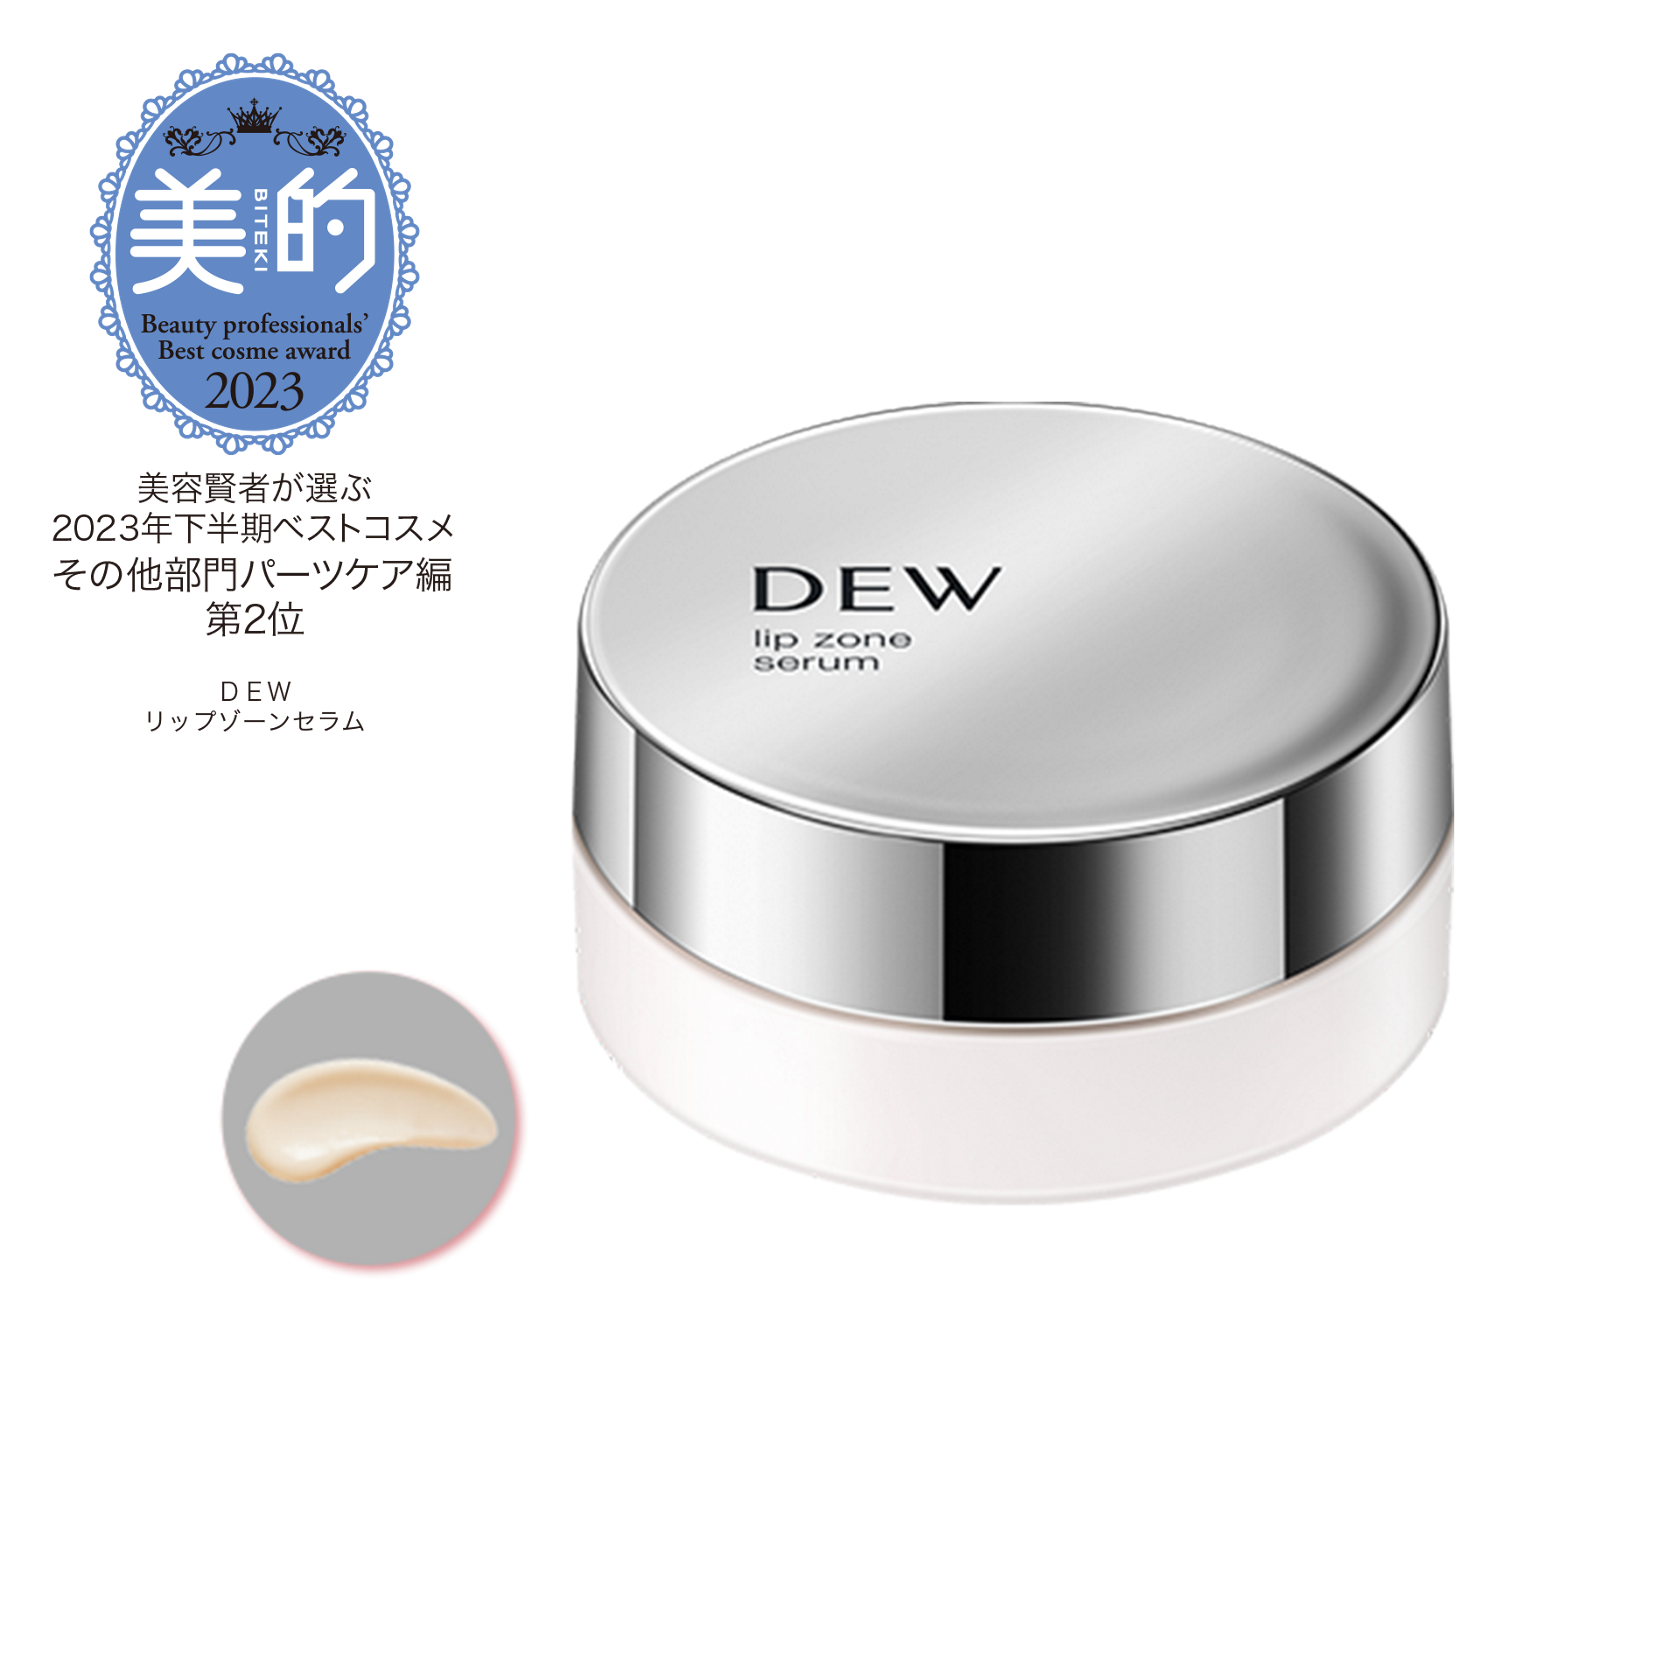 リップゾーンセラム | DEW Skincare Holic | カネボウ化粧品